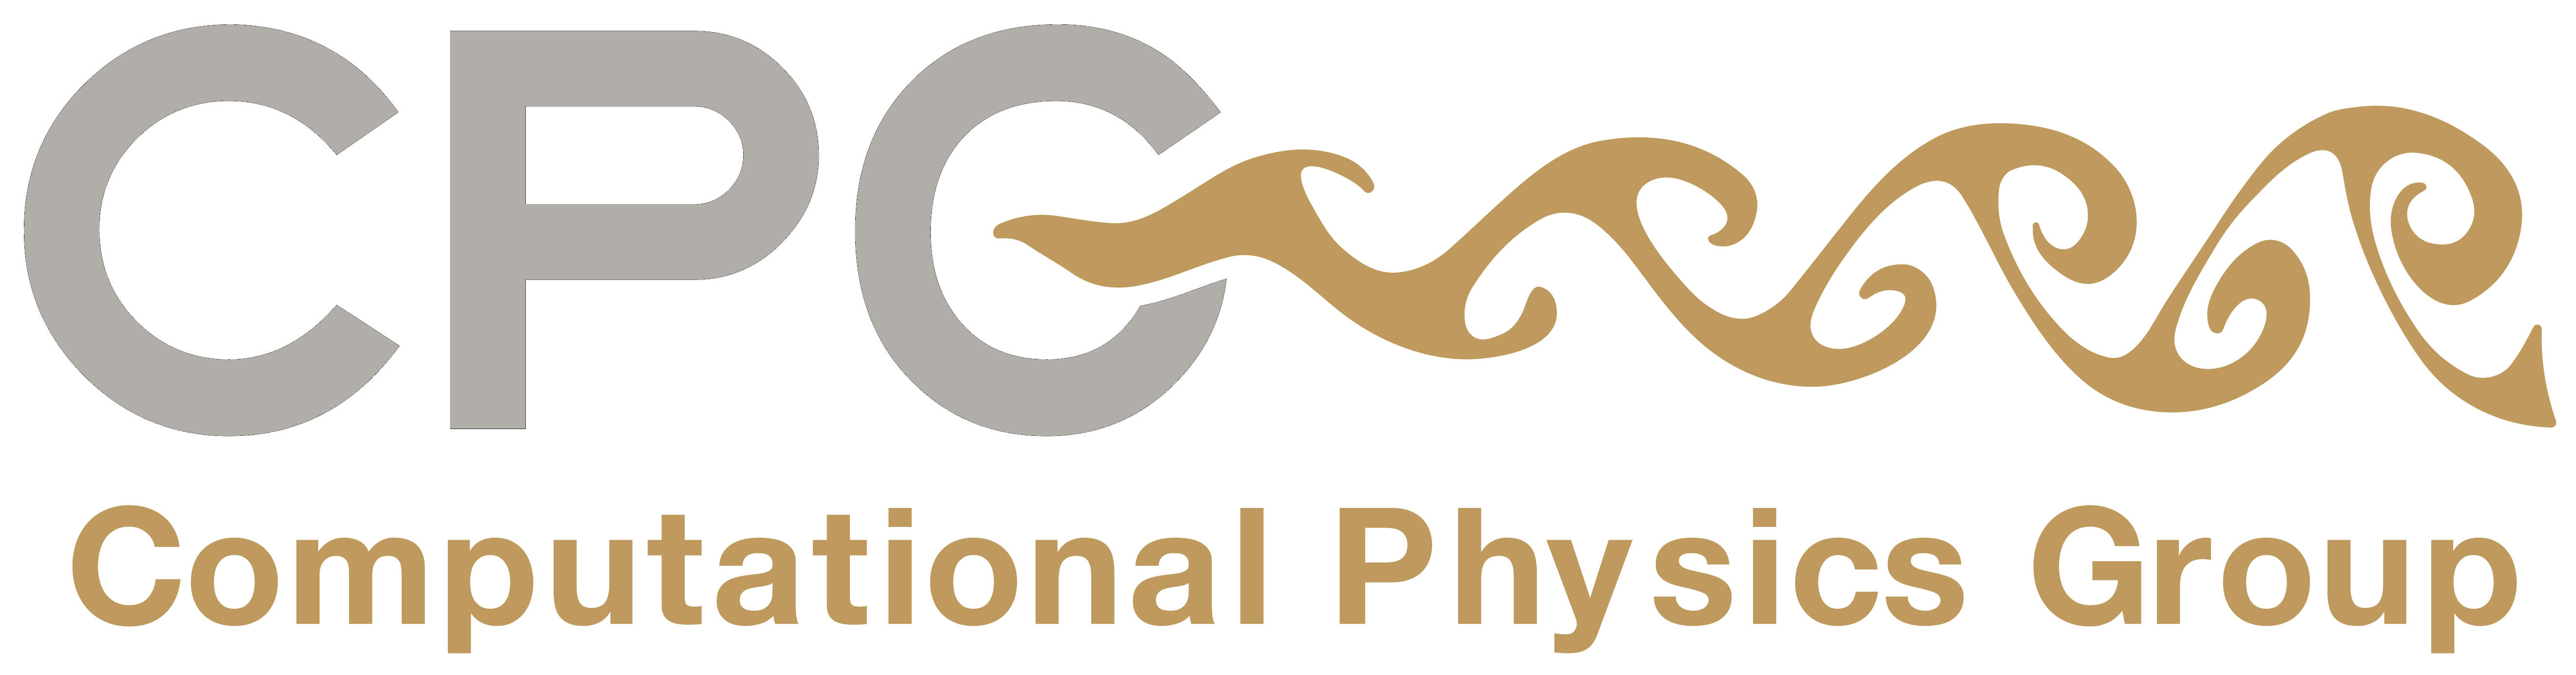 Computational Physics Group Logo